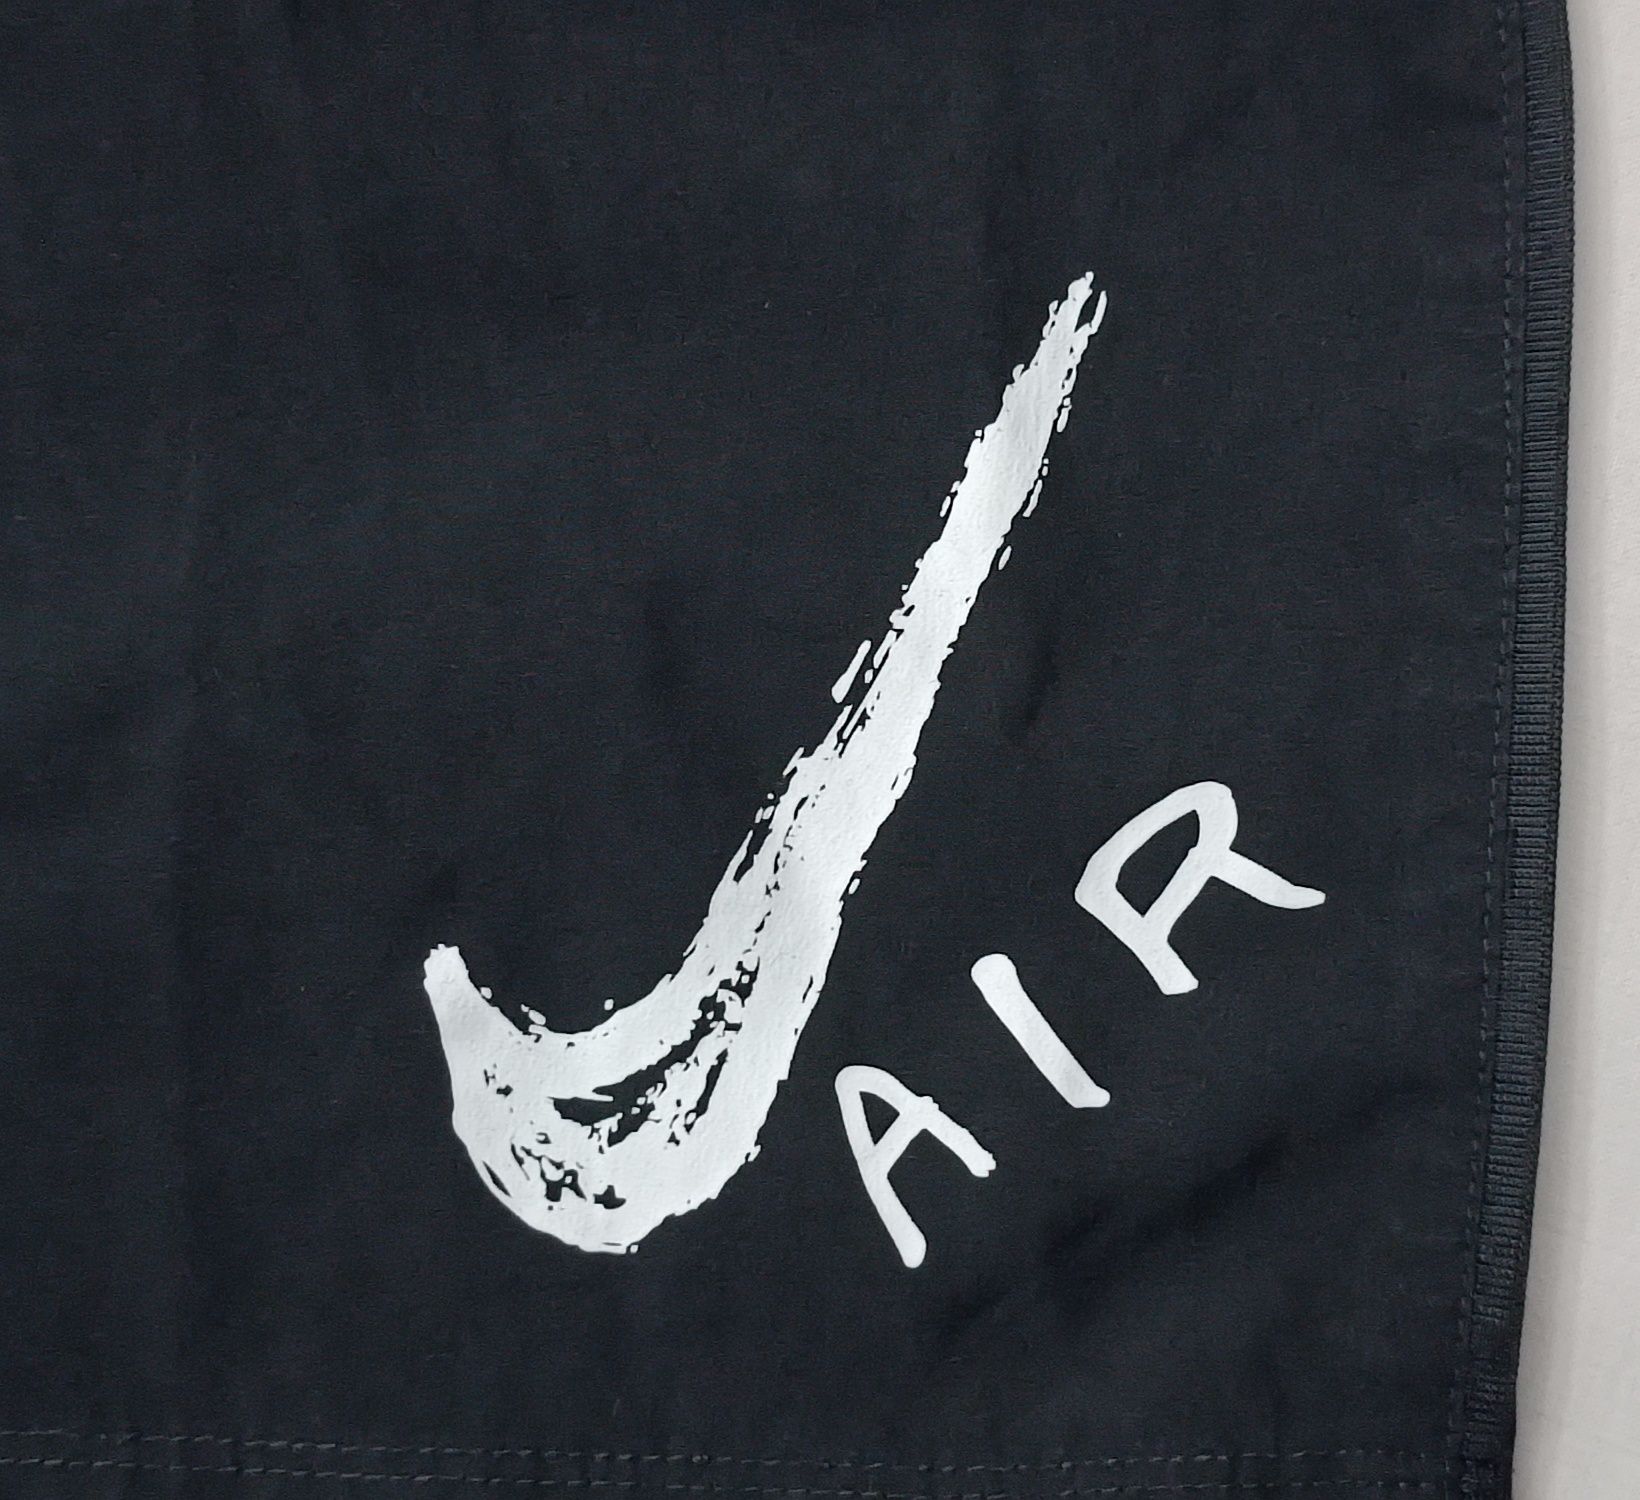 Nike AIR DRI-FIT Shorts оригинални гащета XL Найк спорт фитнес шорти